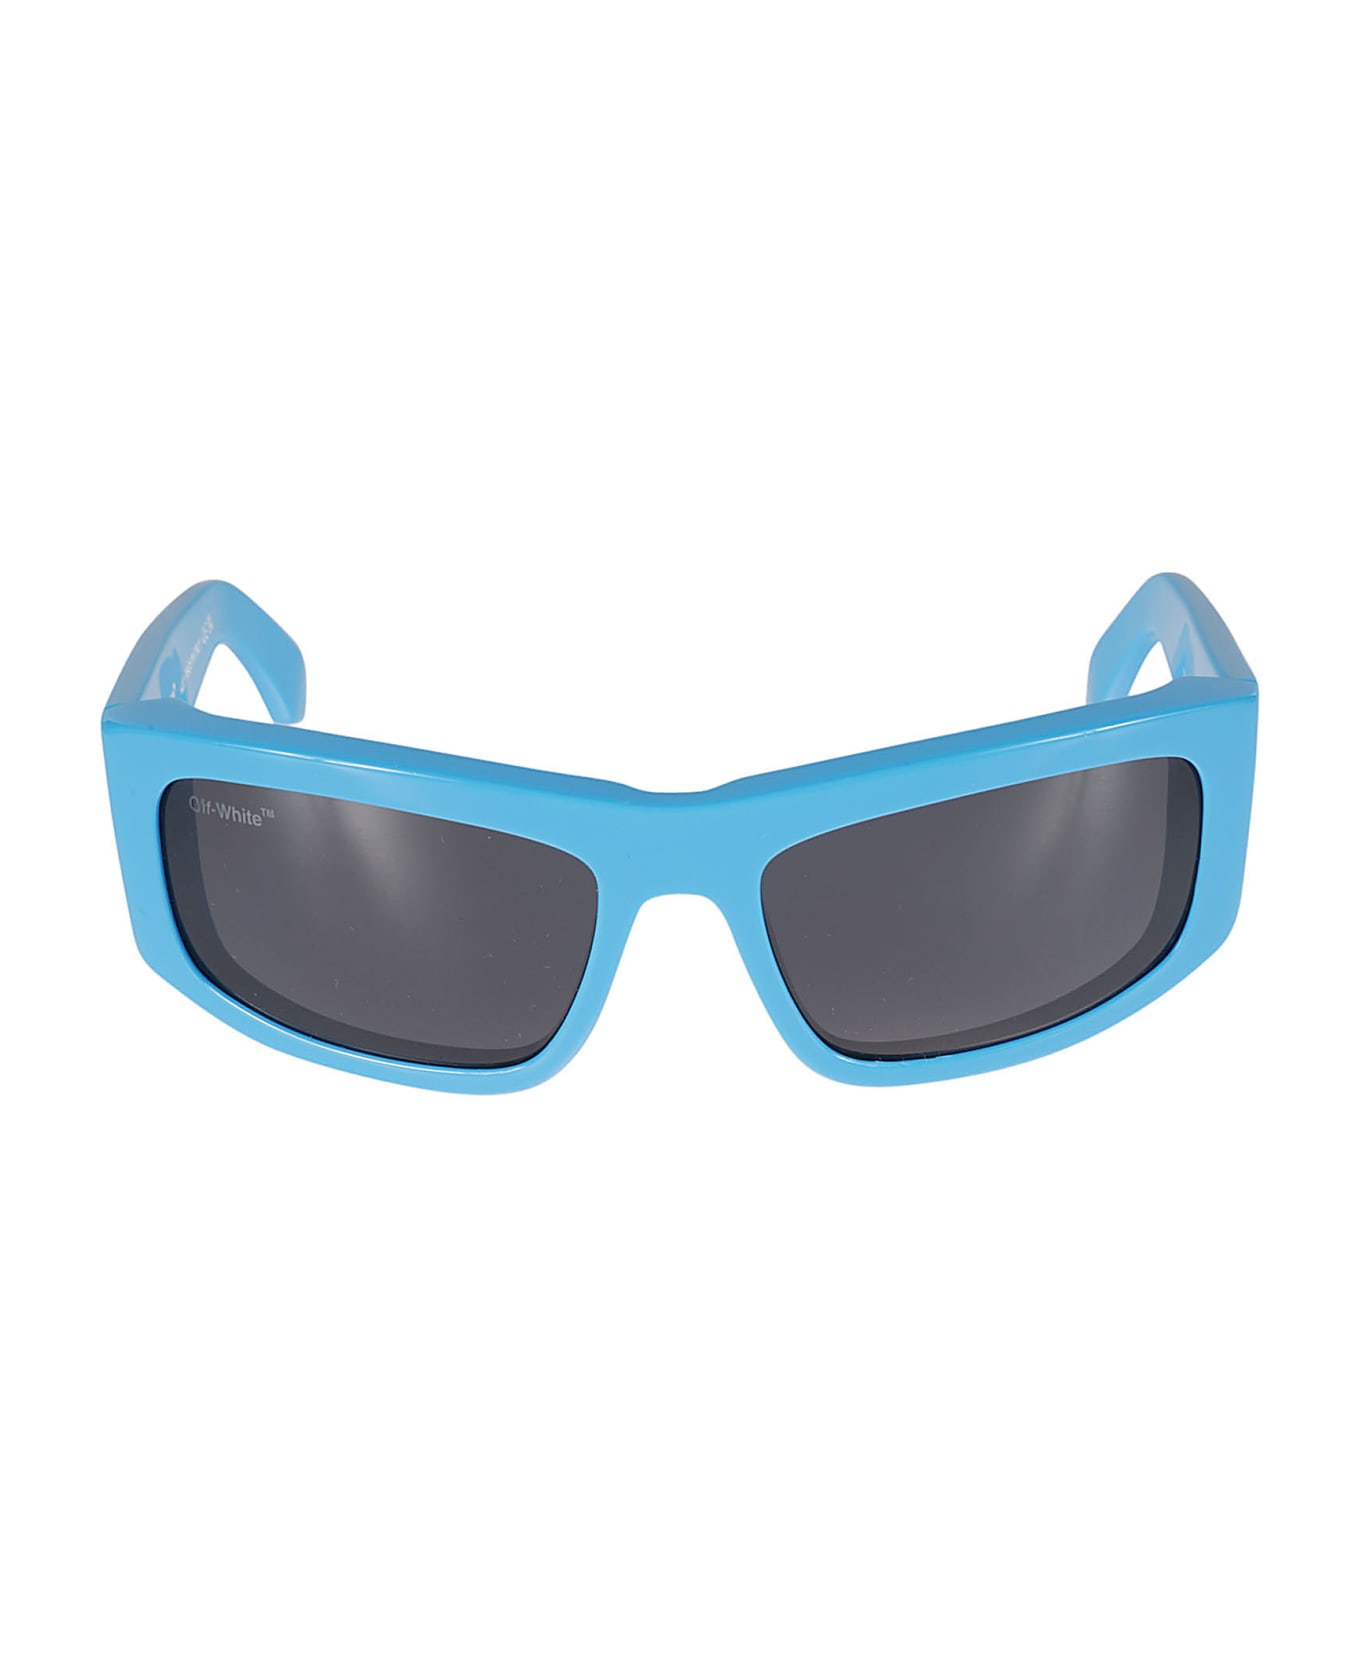 Off-White Joseph Brown Sunglasses - Blue